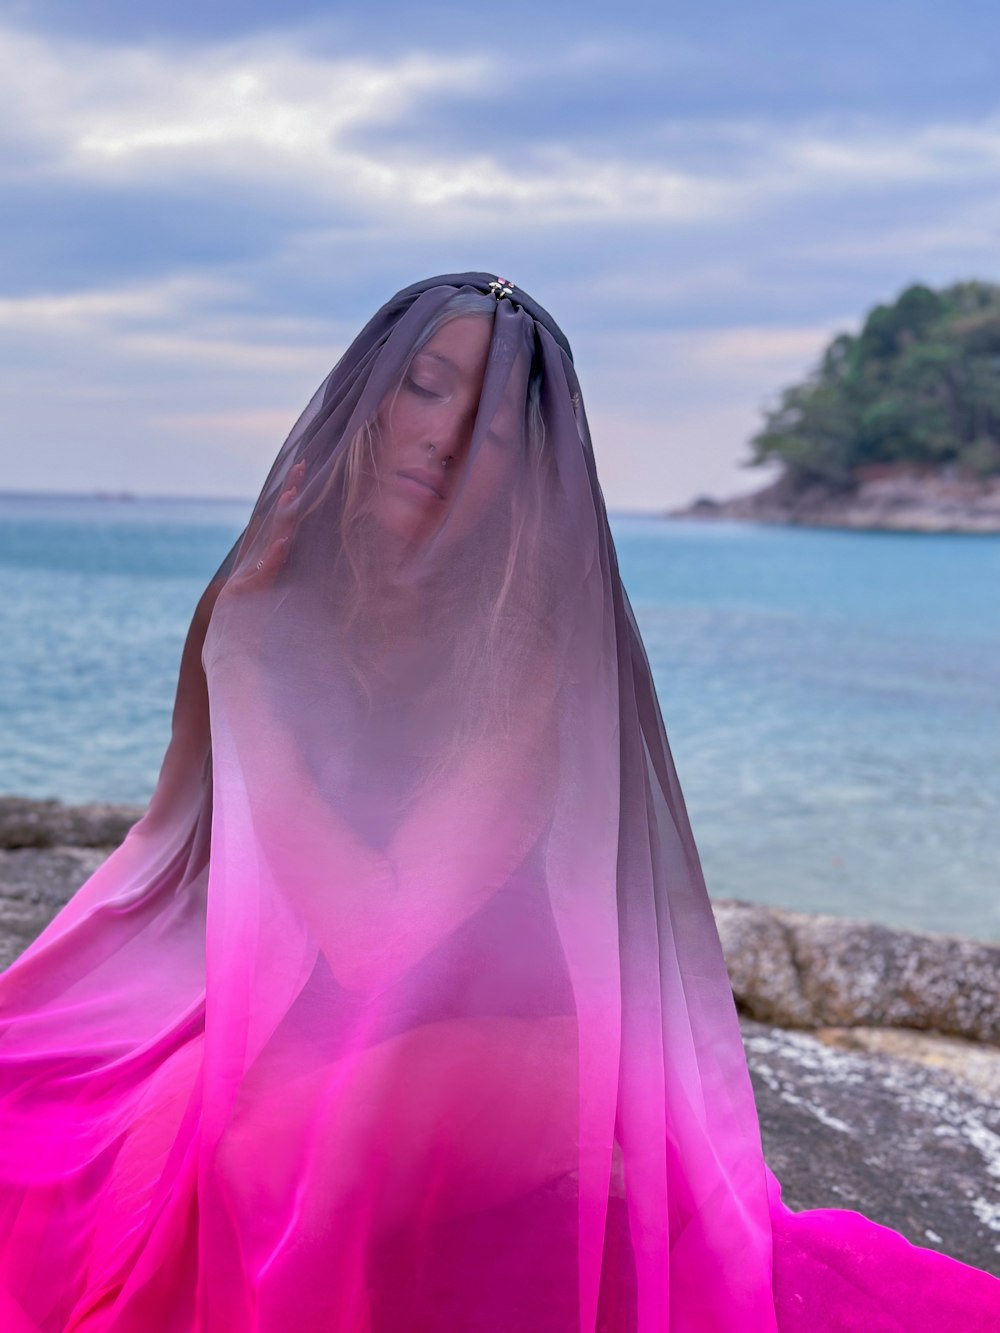 a woman wearing a veil standing on a beach